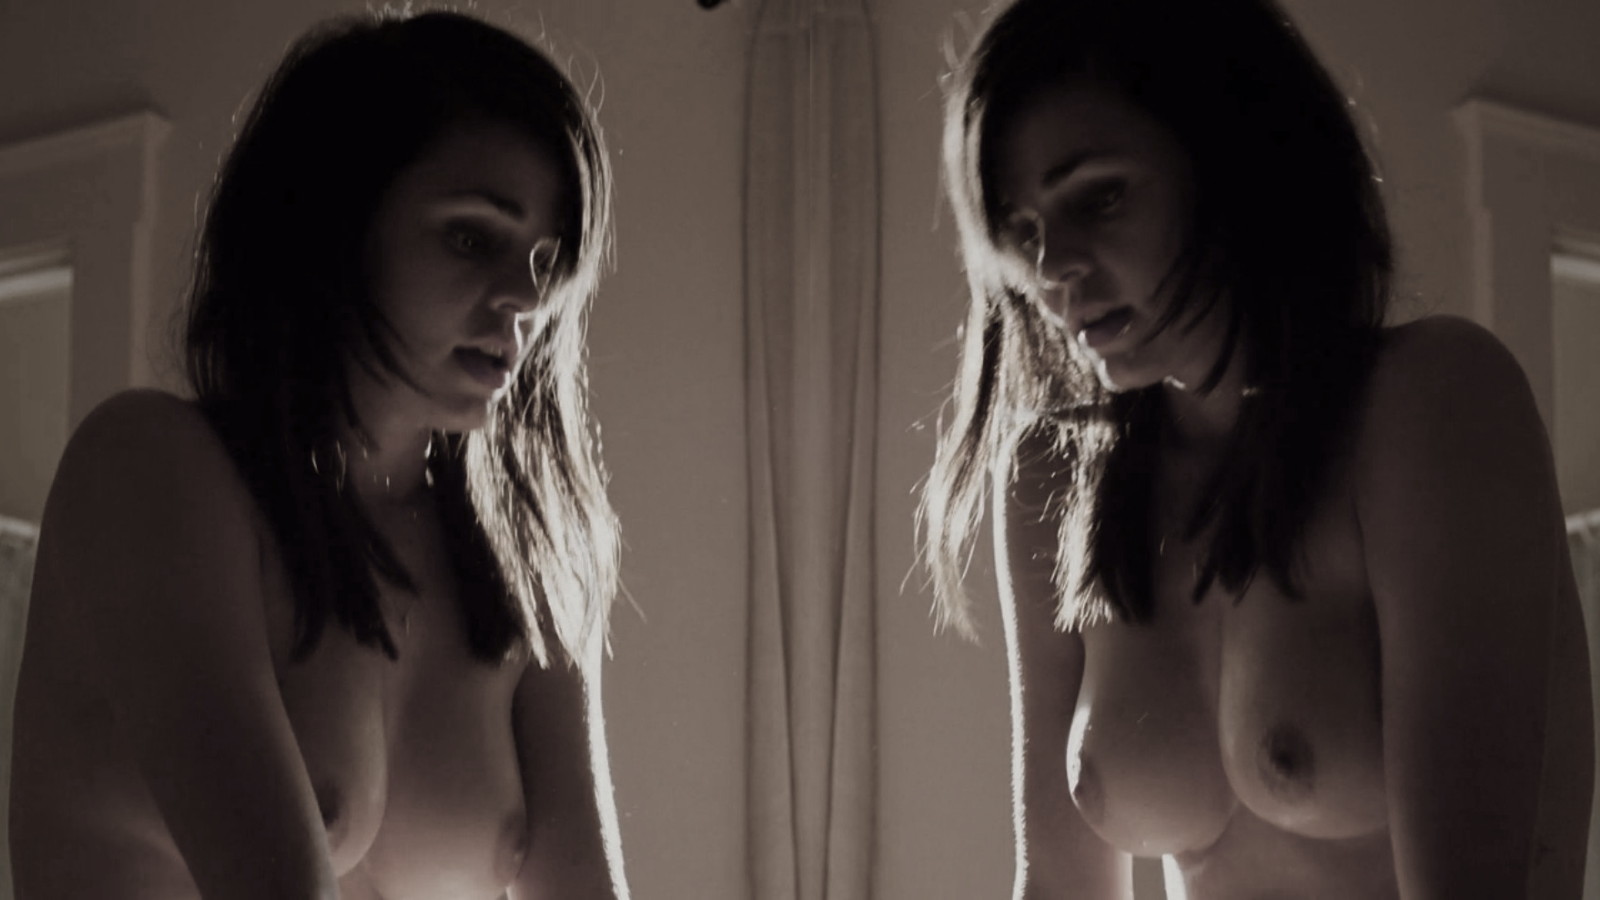 Лина Эско nude pics.